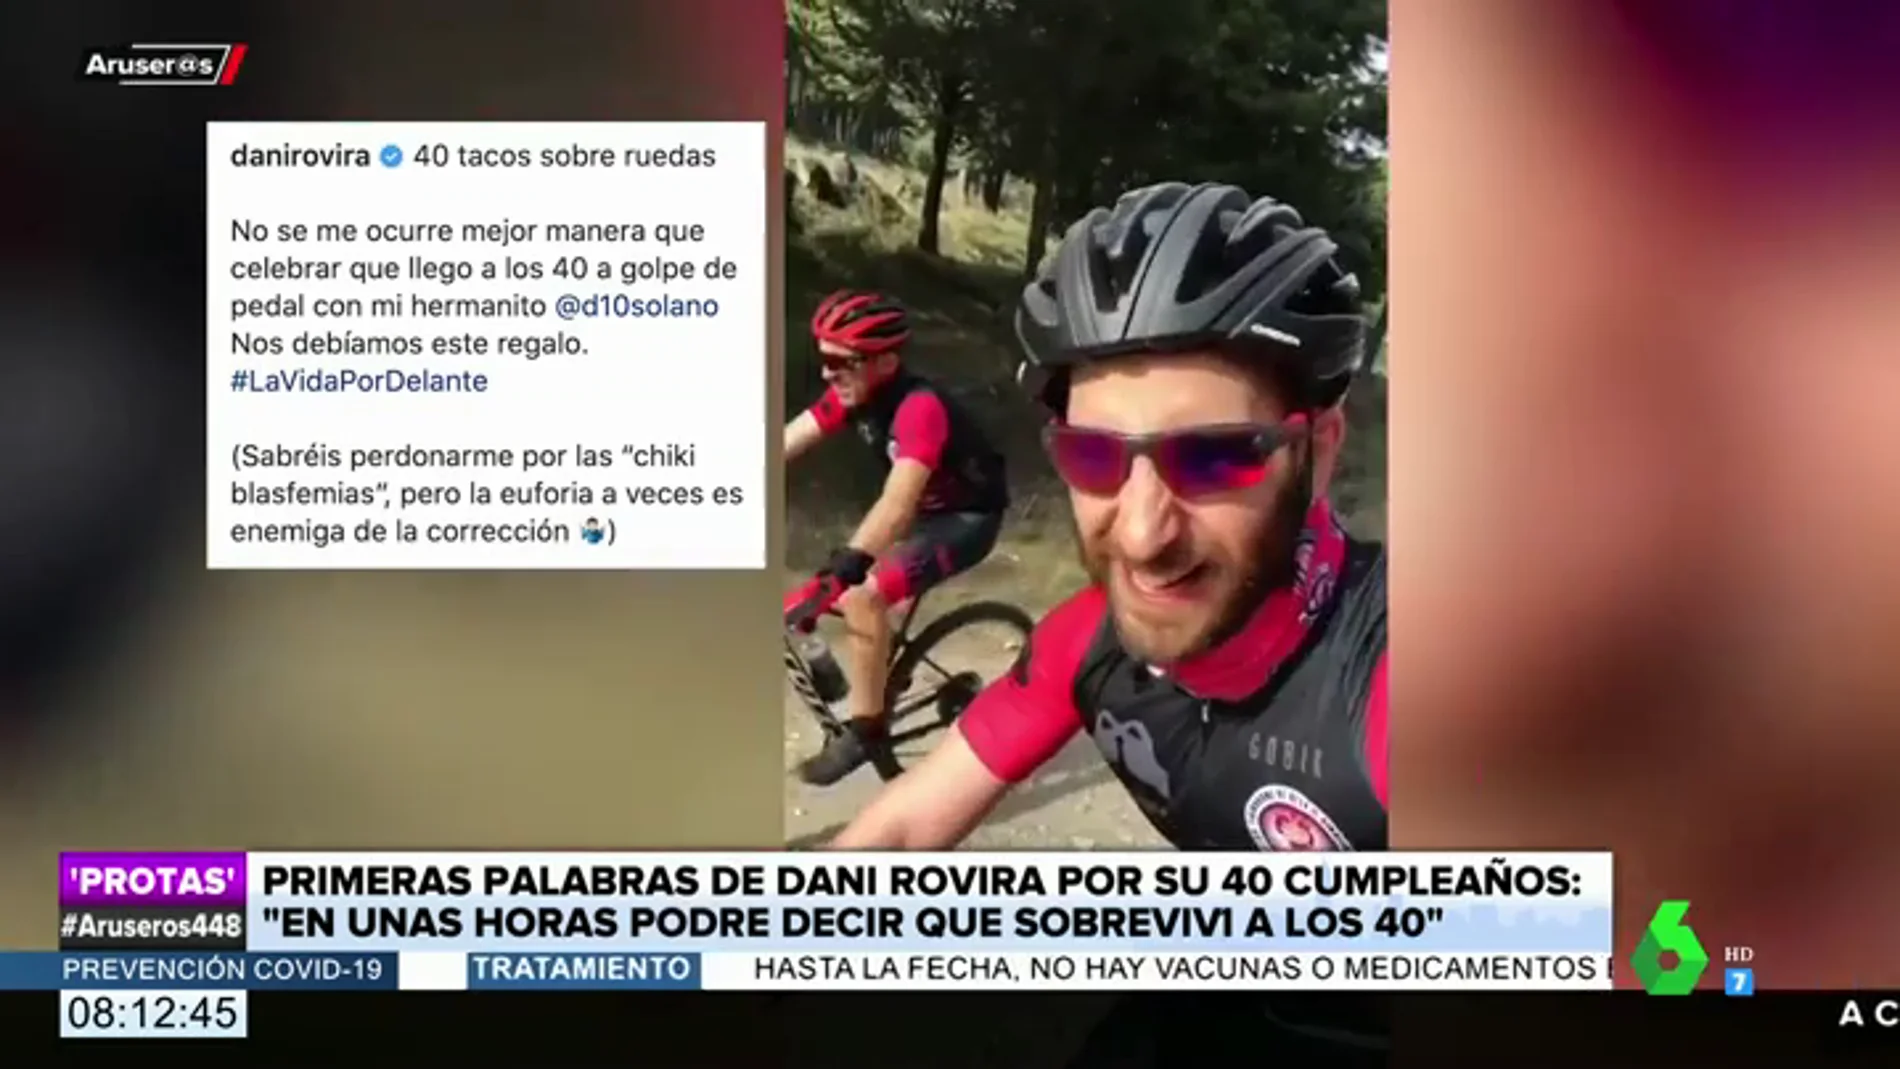 El divertido vídeo de Dani Rovira montando en bici como un 'anti-influencer': "¡Me cago en la p***, me pongo a grabar en una cuesta!"